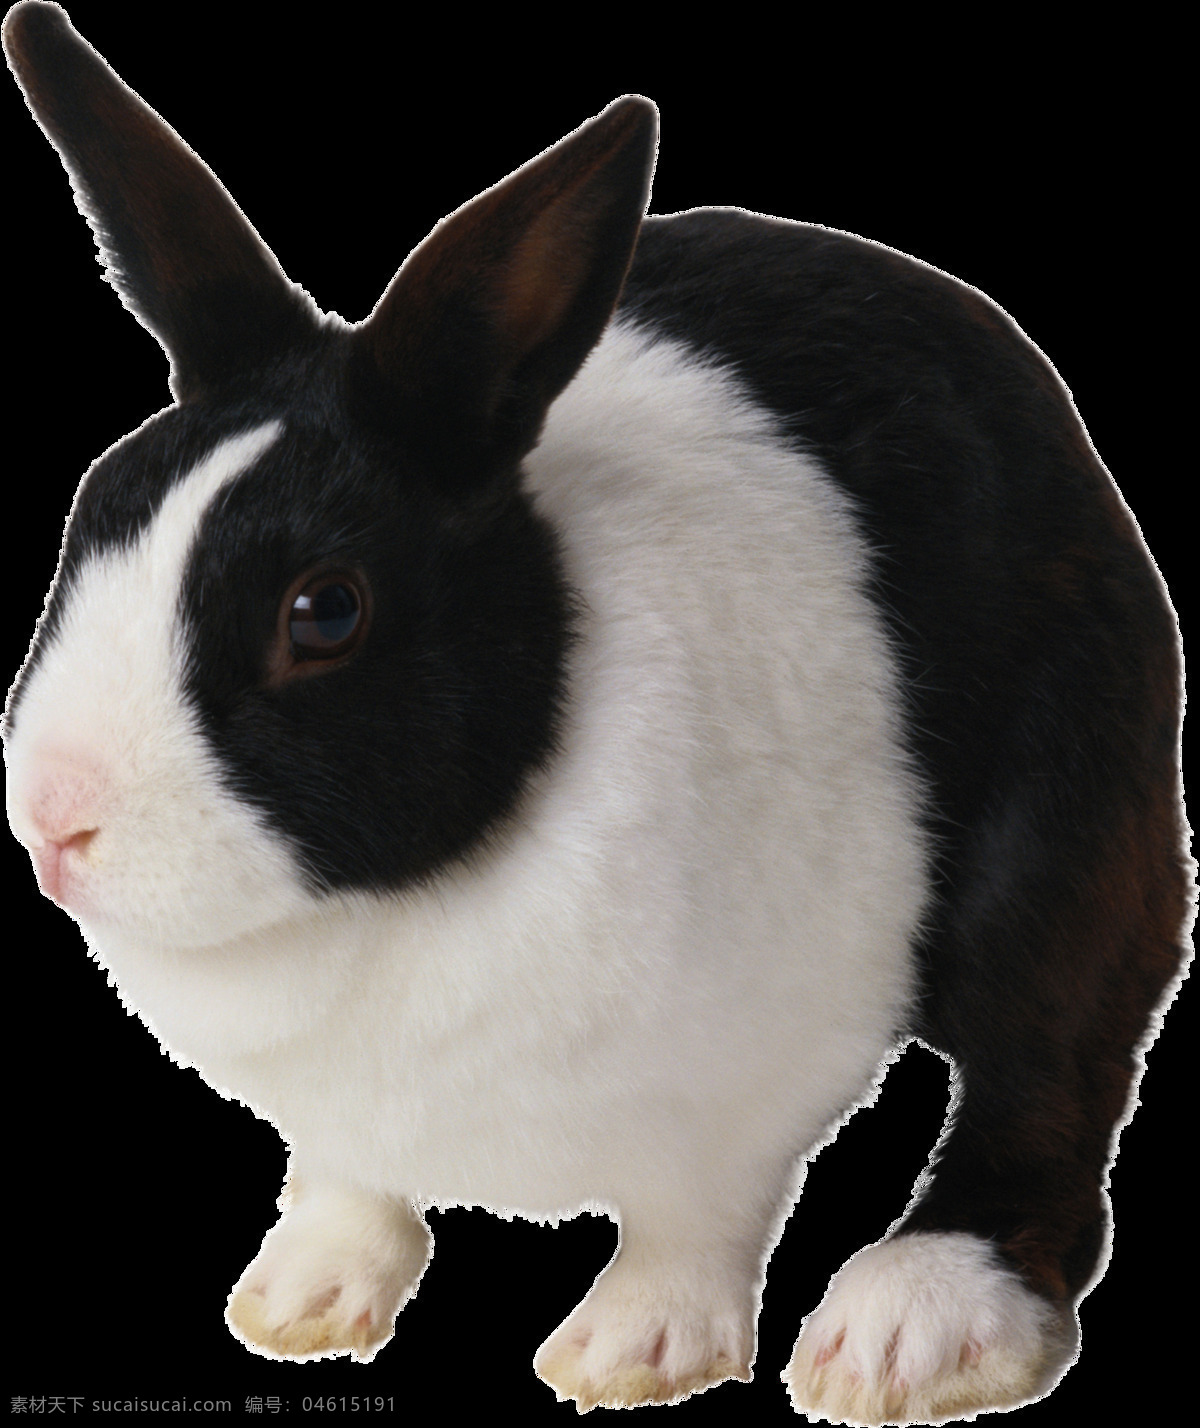 可爱 黑白 宠物 兔子 免 抠 透明 图 层 家畜动物 可爱动物图片 家禽 家畜 动物大全 野生动物 世界 上 最 萌 动物 可爱小狗图片 死人 小 动物图片 野生动物图片 萌宠图片